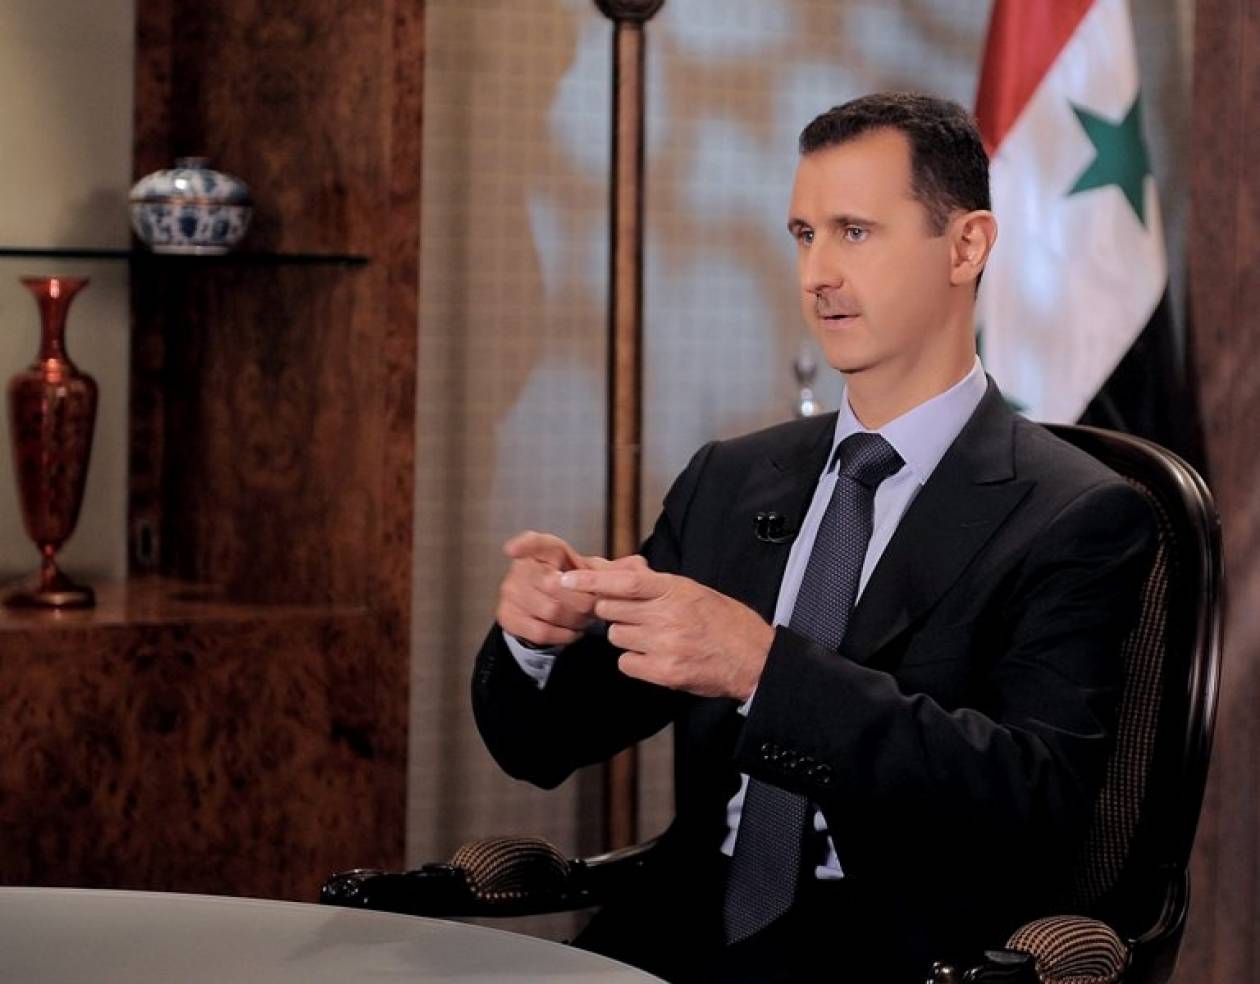 Άσαντ: Στα χέρια του στρατού η τύχη της Συρίας